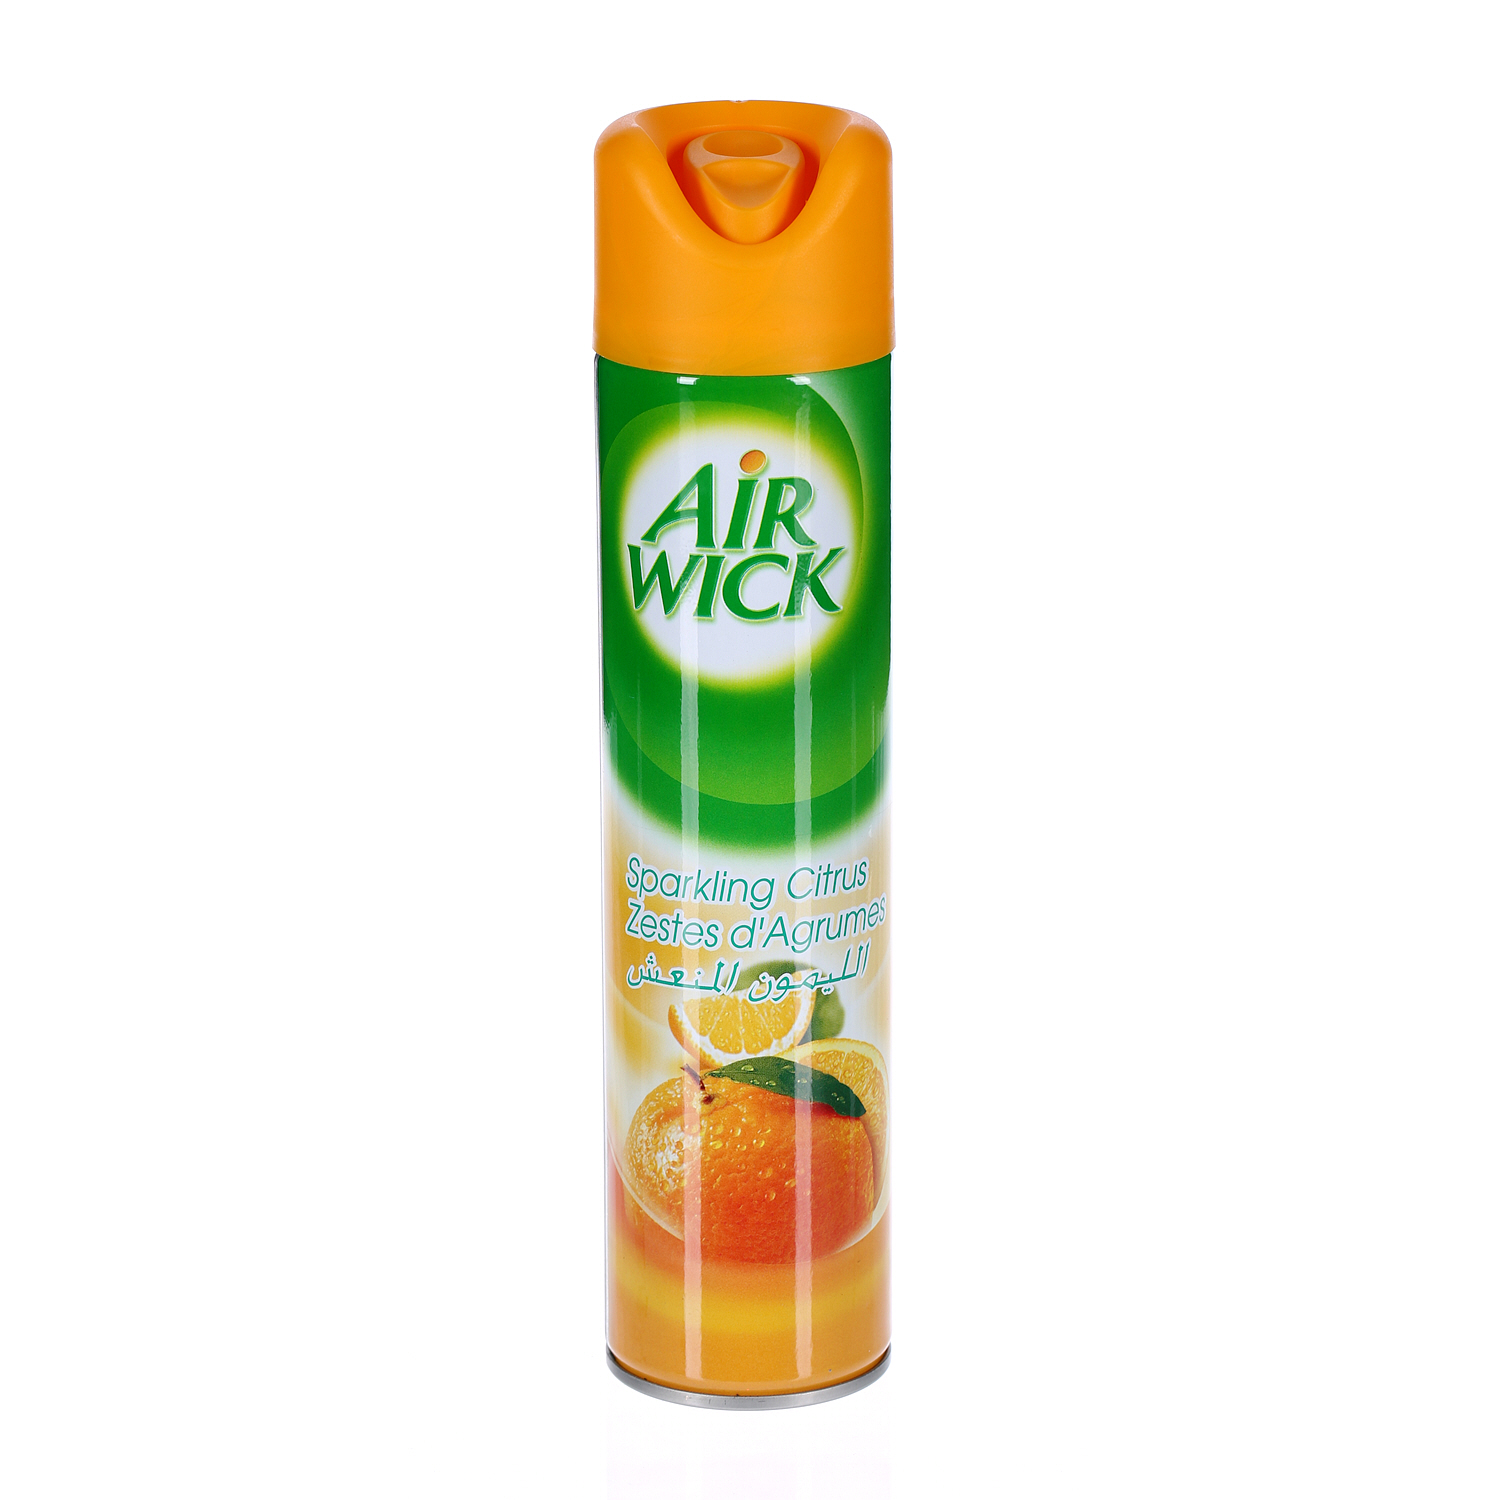 Air Wick Aerosol Sparkling Citrus 300 ml